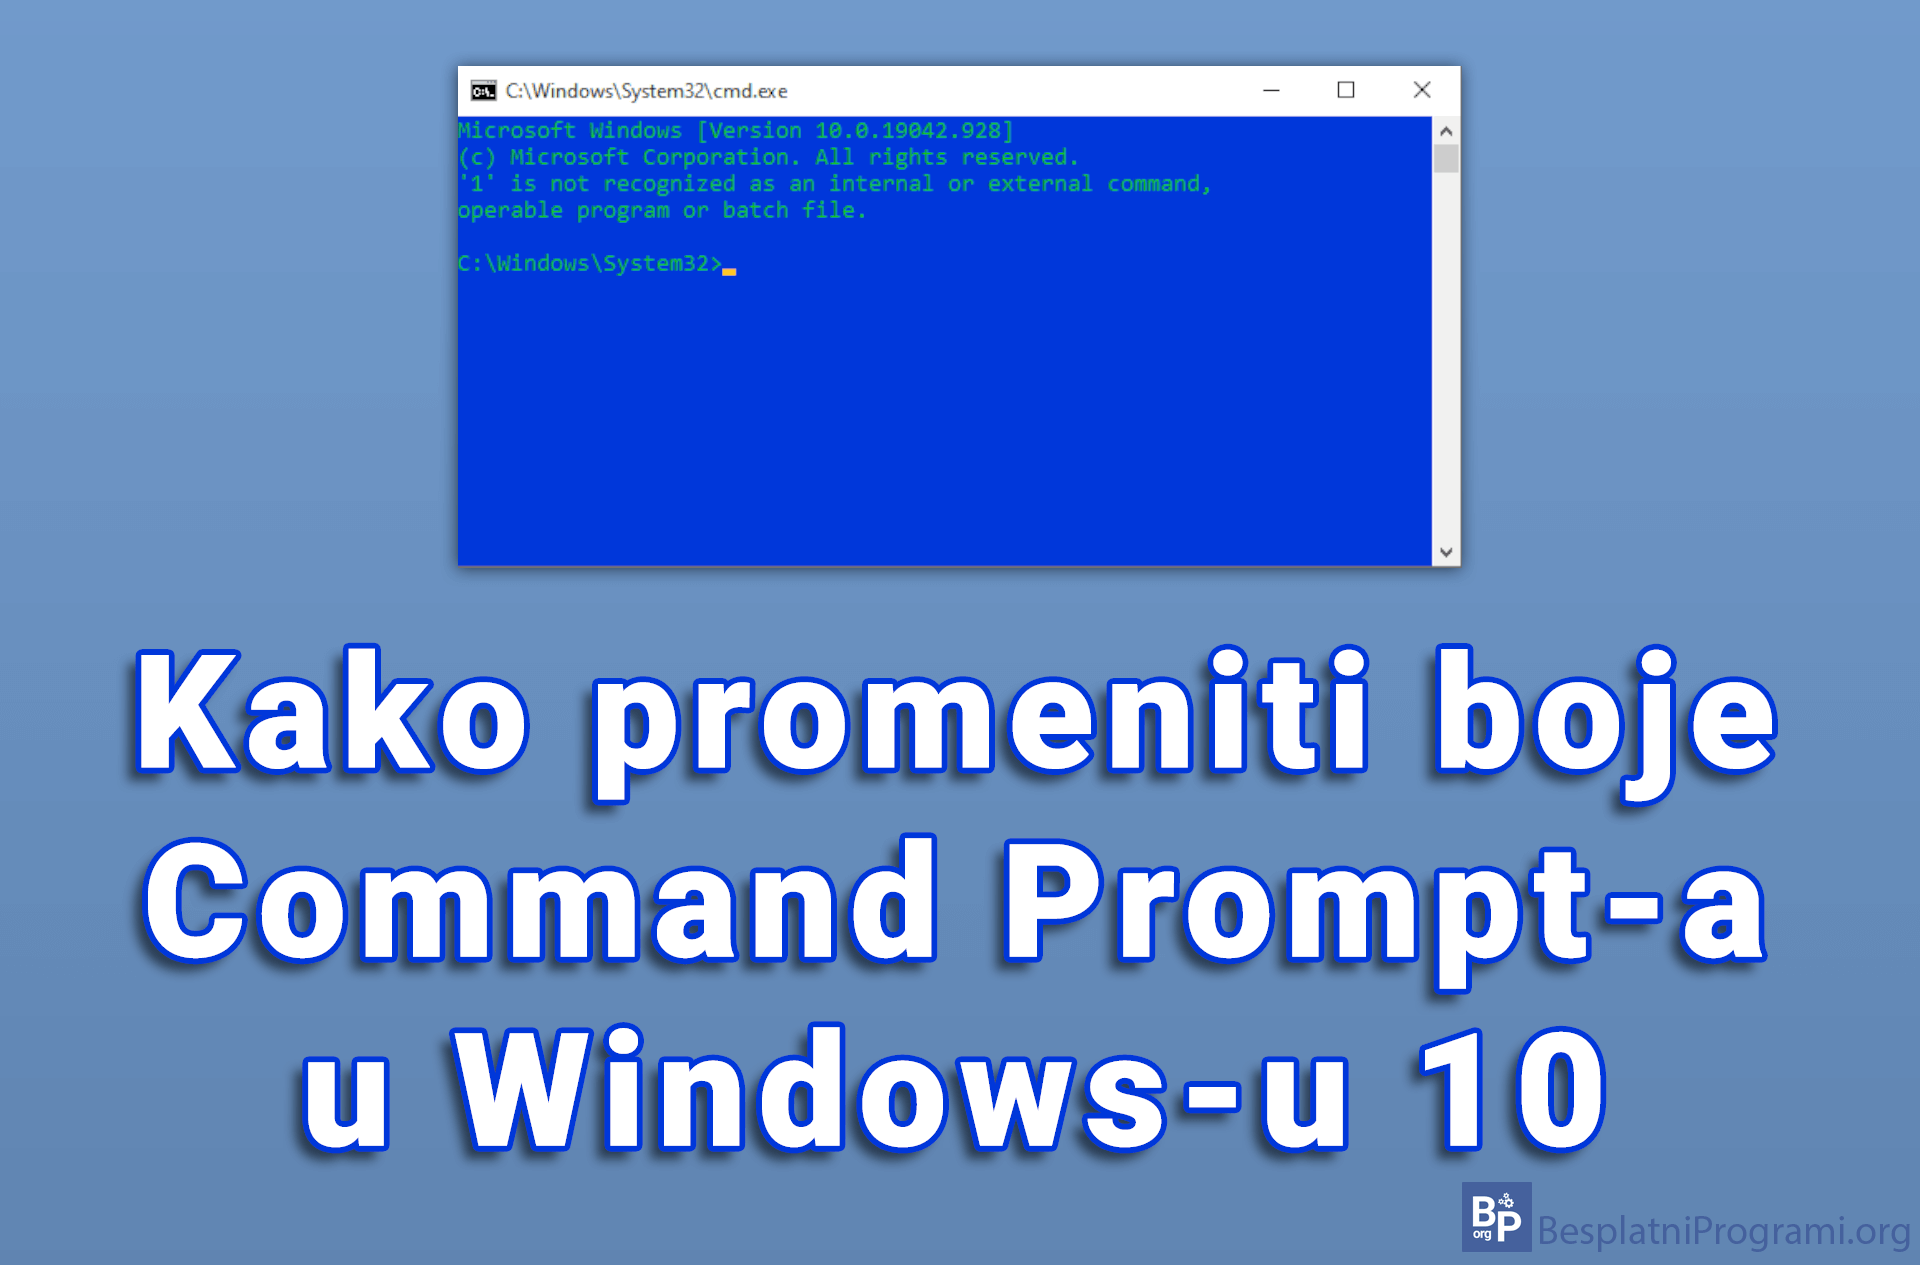 Kako promeniti boje Command Prompt-a u Windows-u 10